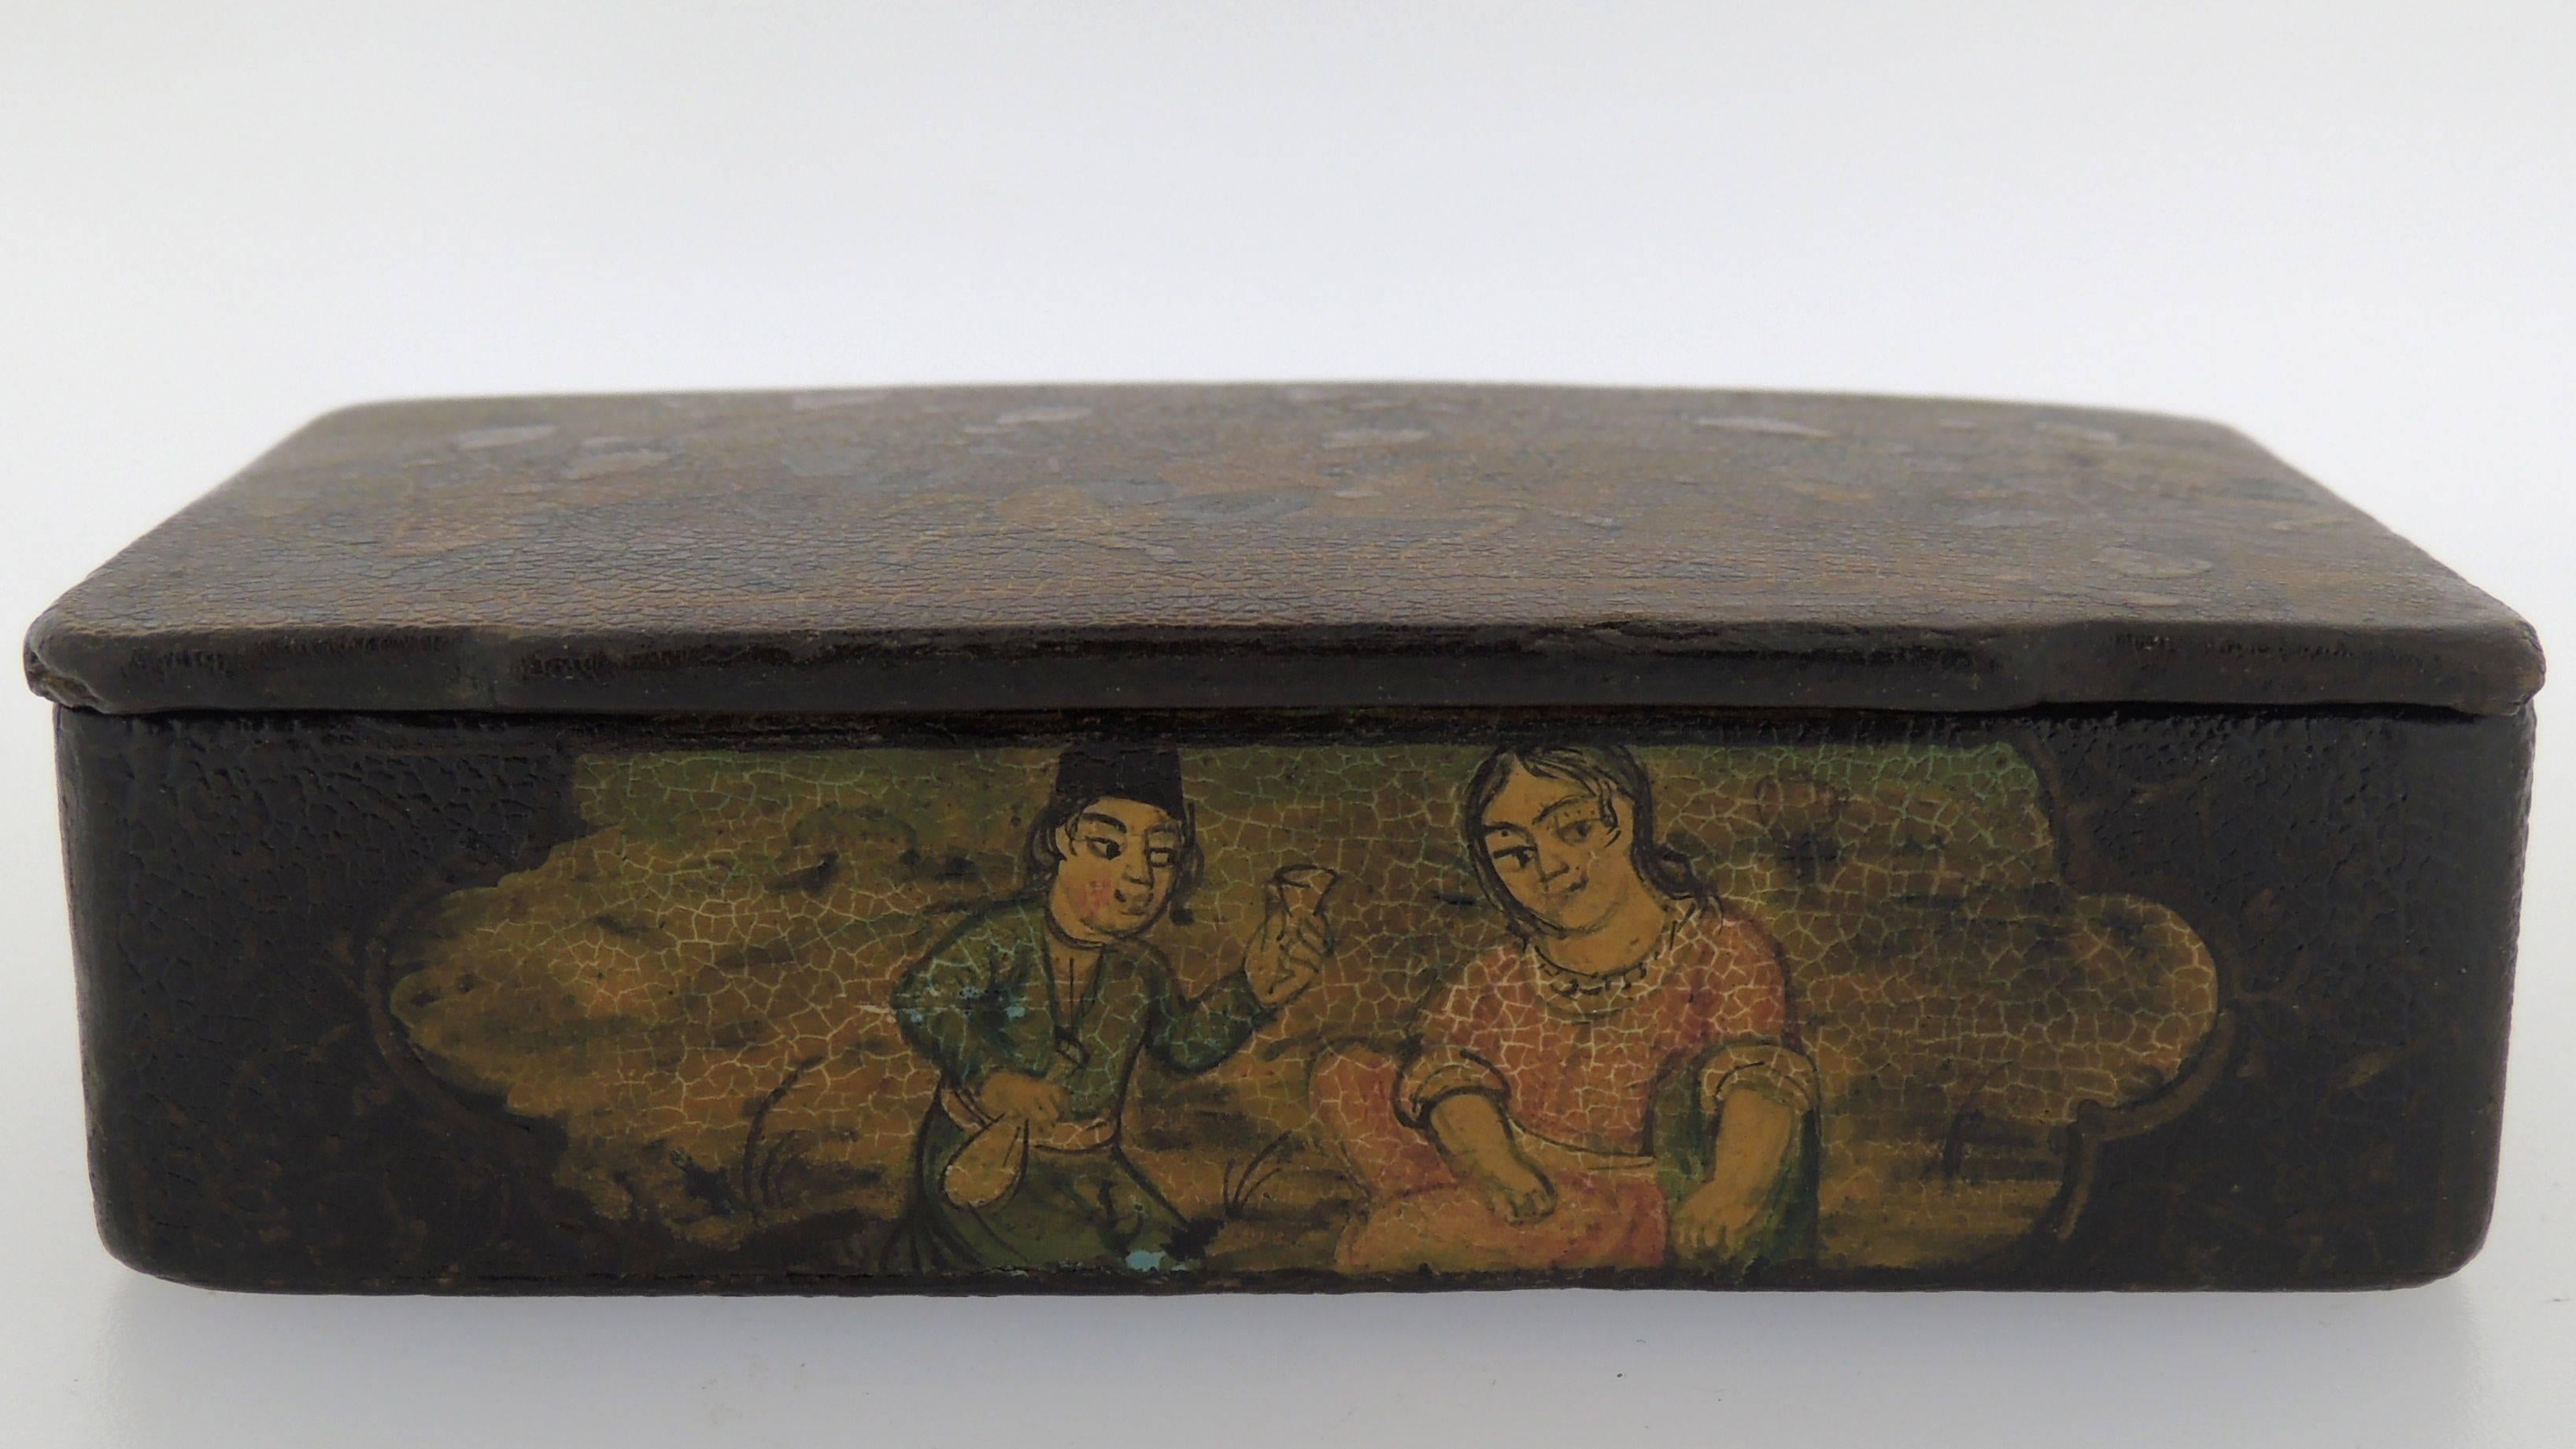 Eine feine antike persische Schnupftabakdose aus Pappmaché.

Bestehend aus einem lackierten Pappmachê mit Verzierung auf dem Deckel und allen 4 Seiten. 

Auf dem Deckel der Schachtel sind zahlreiche Männer auf Pferden abgebildet, die Chovgan